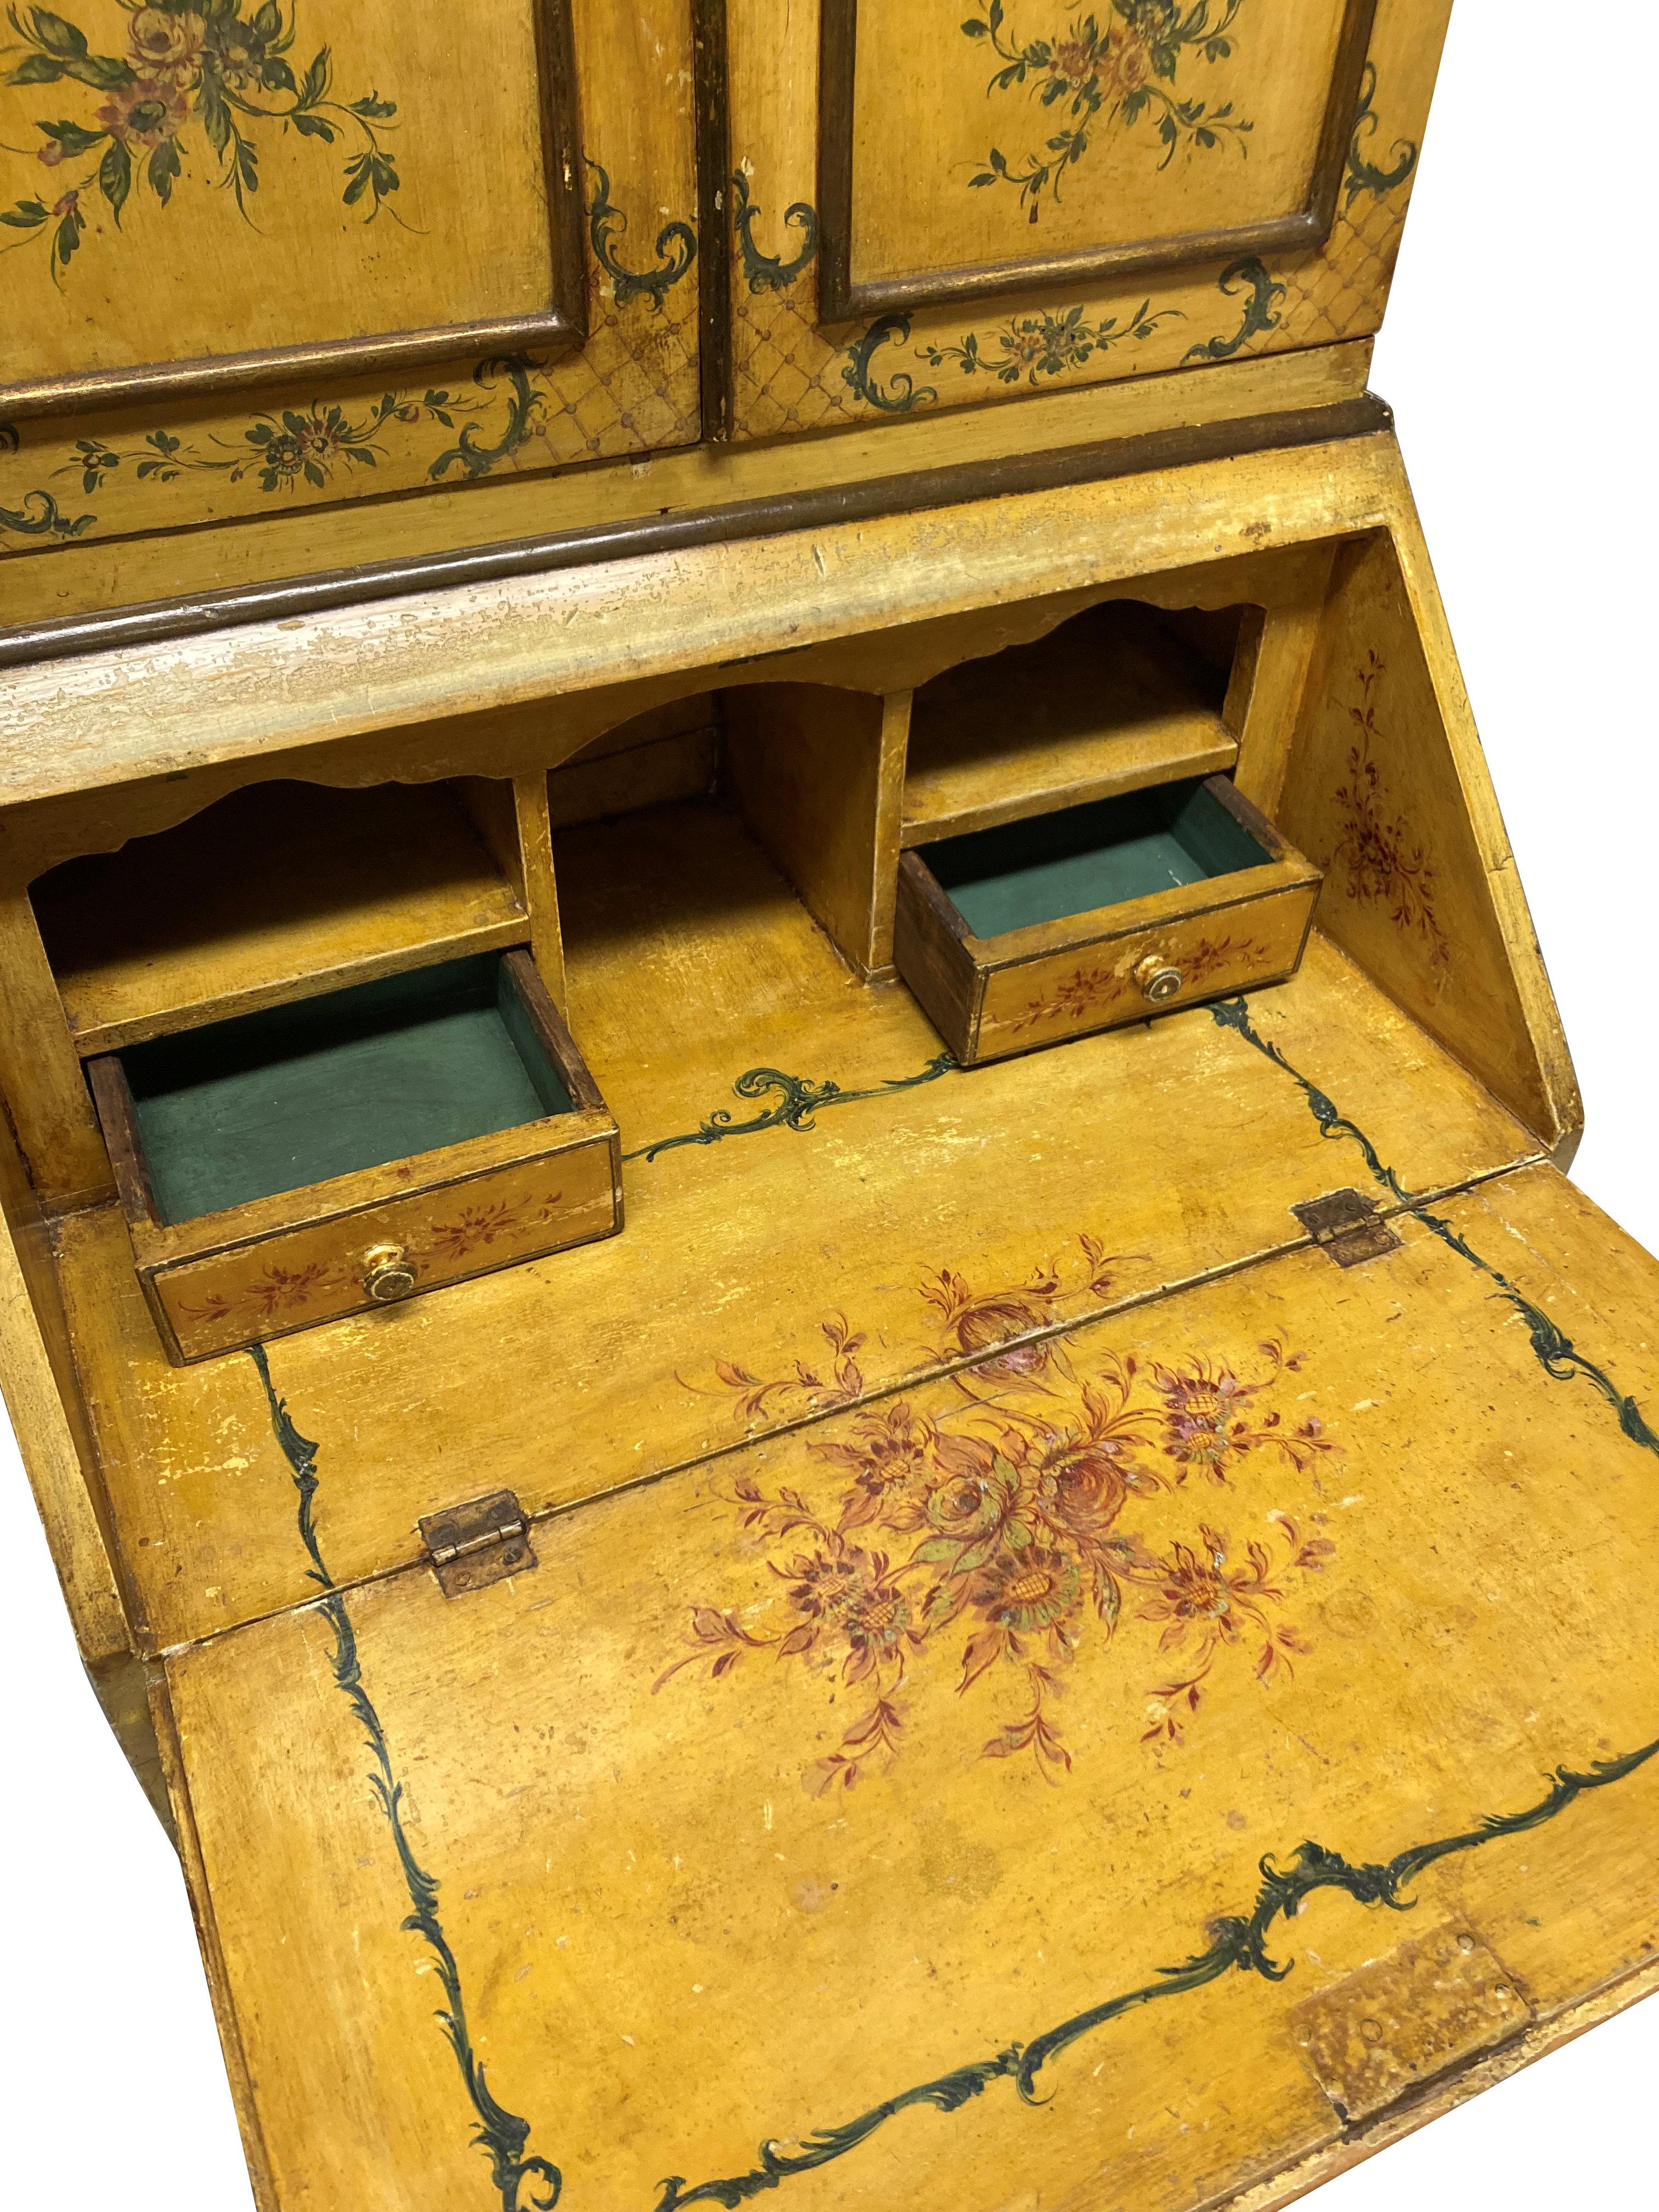 Ein venezianischer Sekretär aus dem späten 19. Jahrhundert mit auffallend gelbem Lack und wunderschön handgemalten Verzierungen. Mit vier Schubladen unter der Fallfront und dem oberen Schrank mit vier Regalen, aquamarin lackiert, mit einem